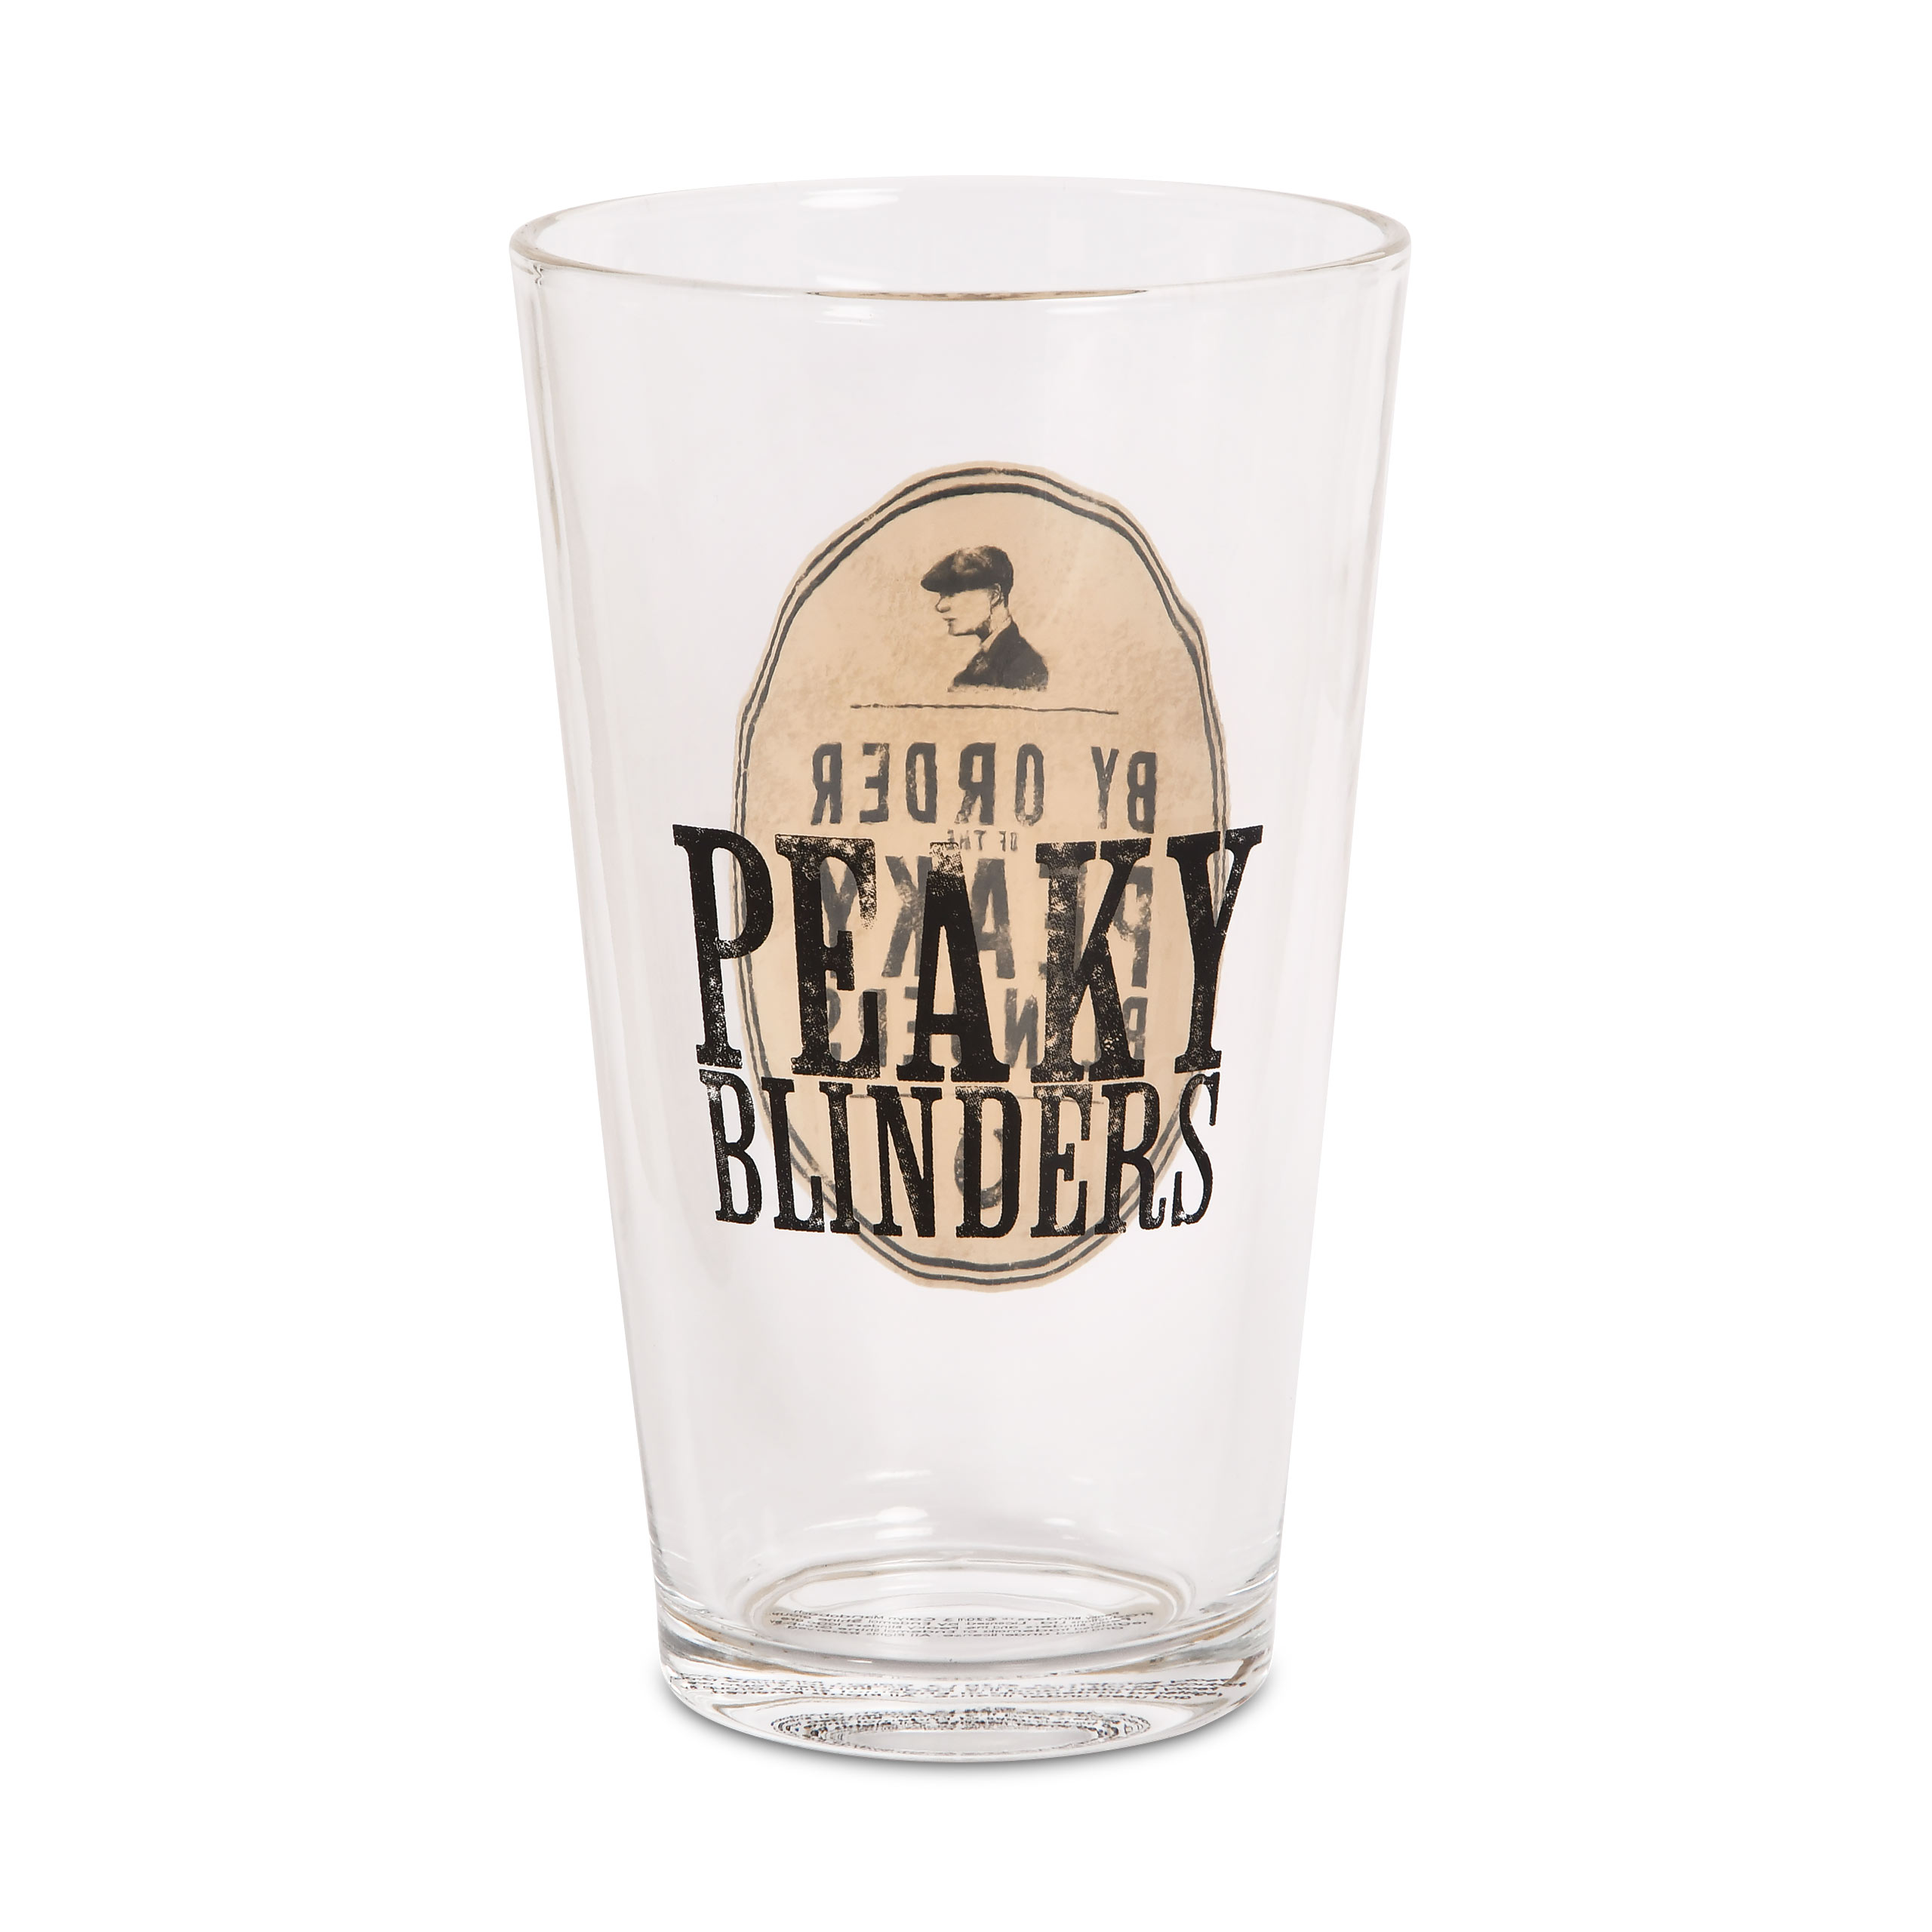 Peaky Blinders - Le verre d'estampillage des ordres